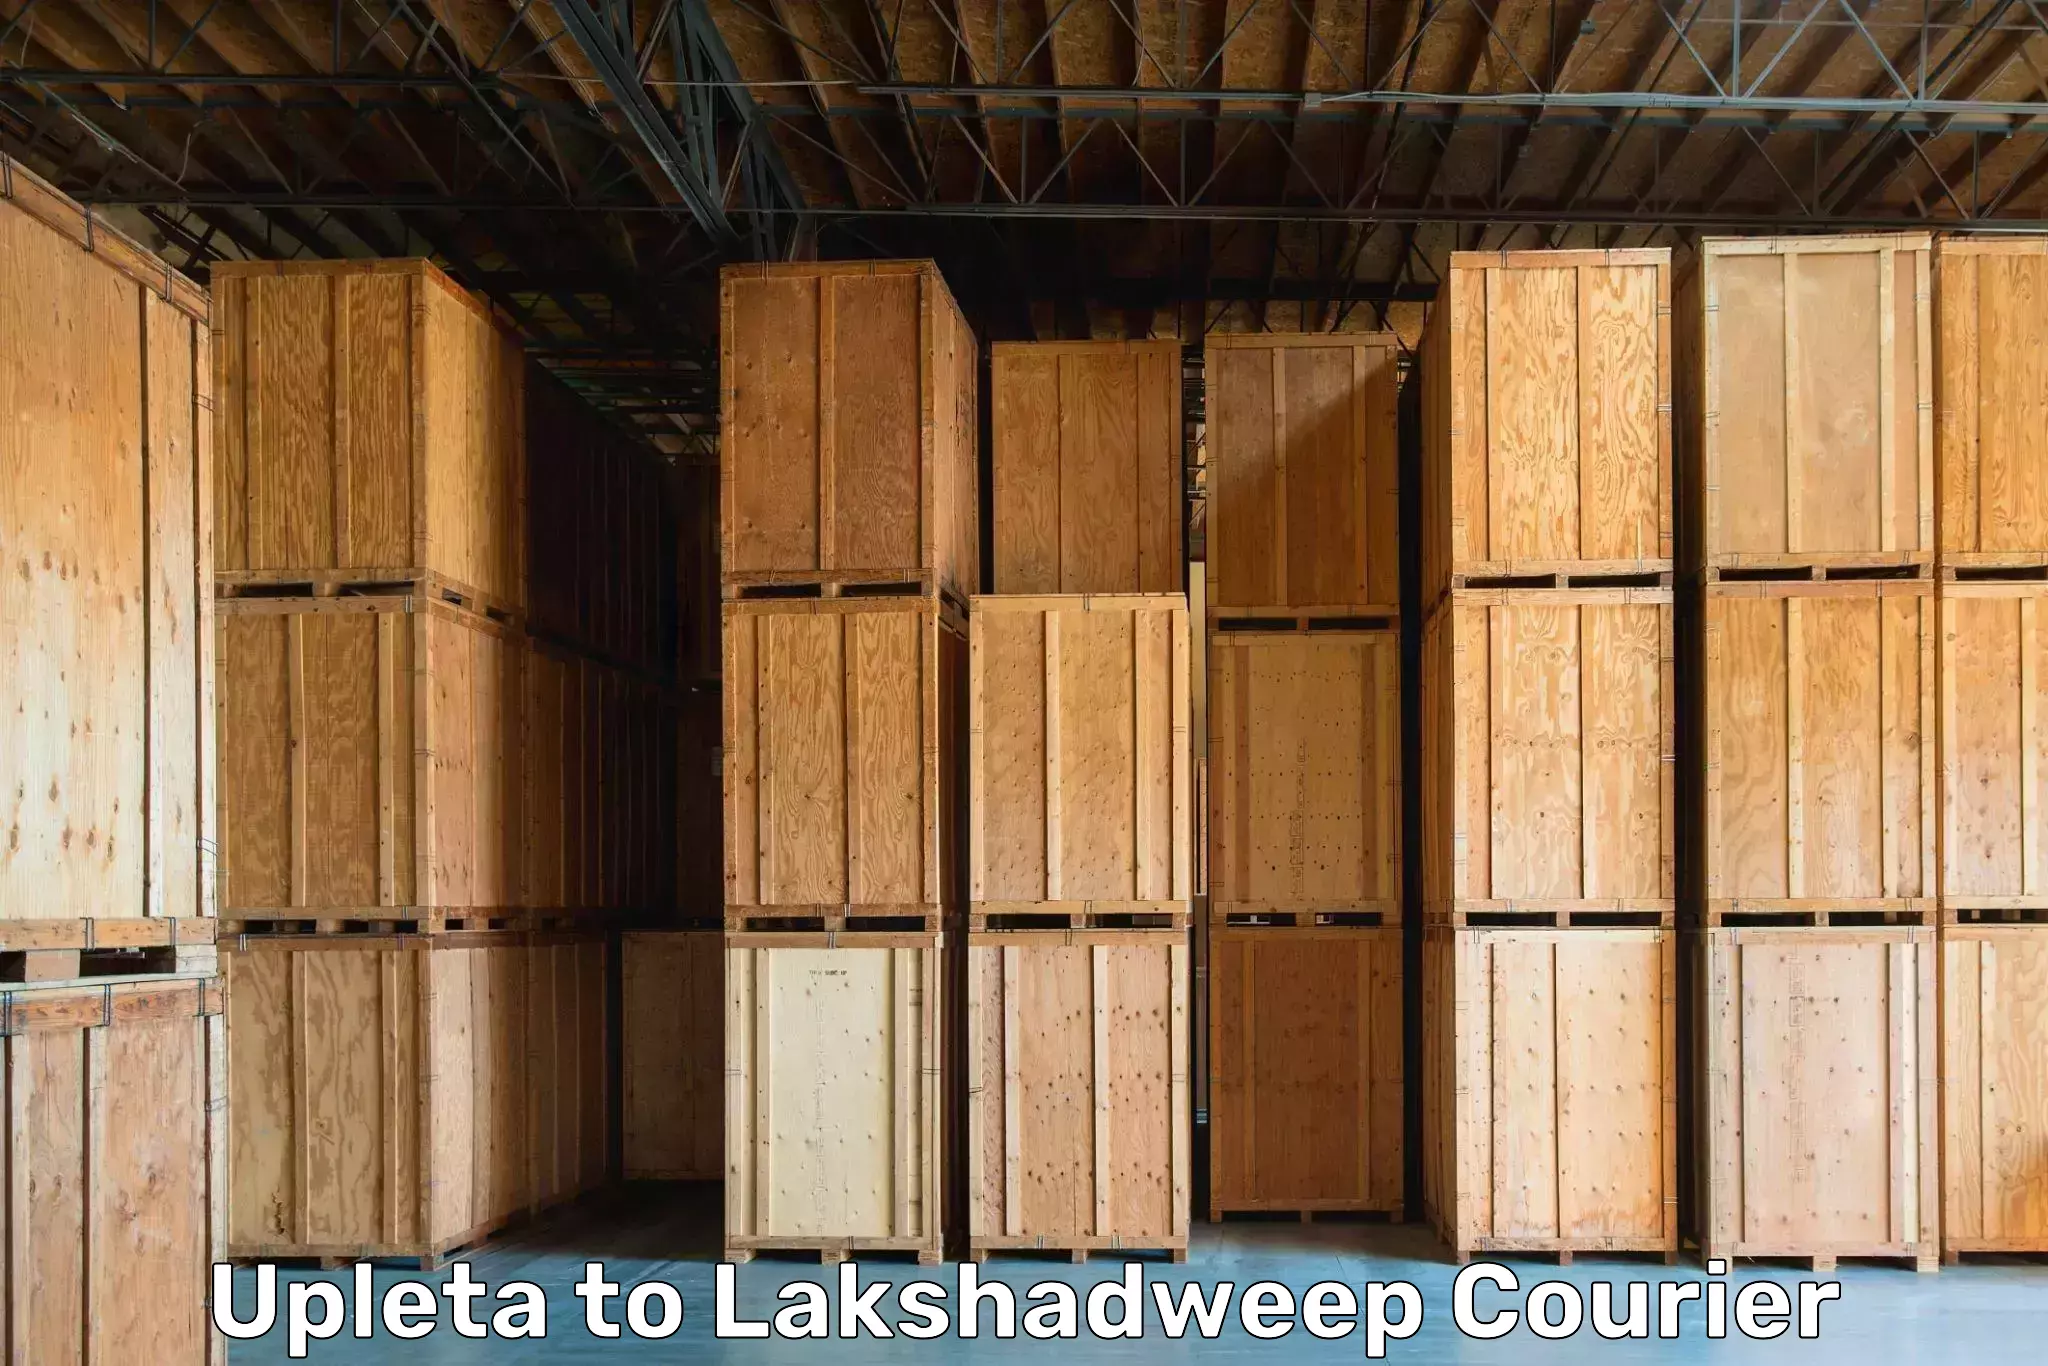 Furniture moving experts Upleta to Lakshadweep